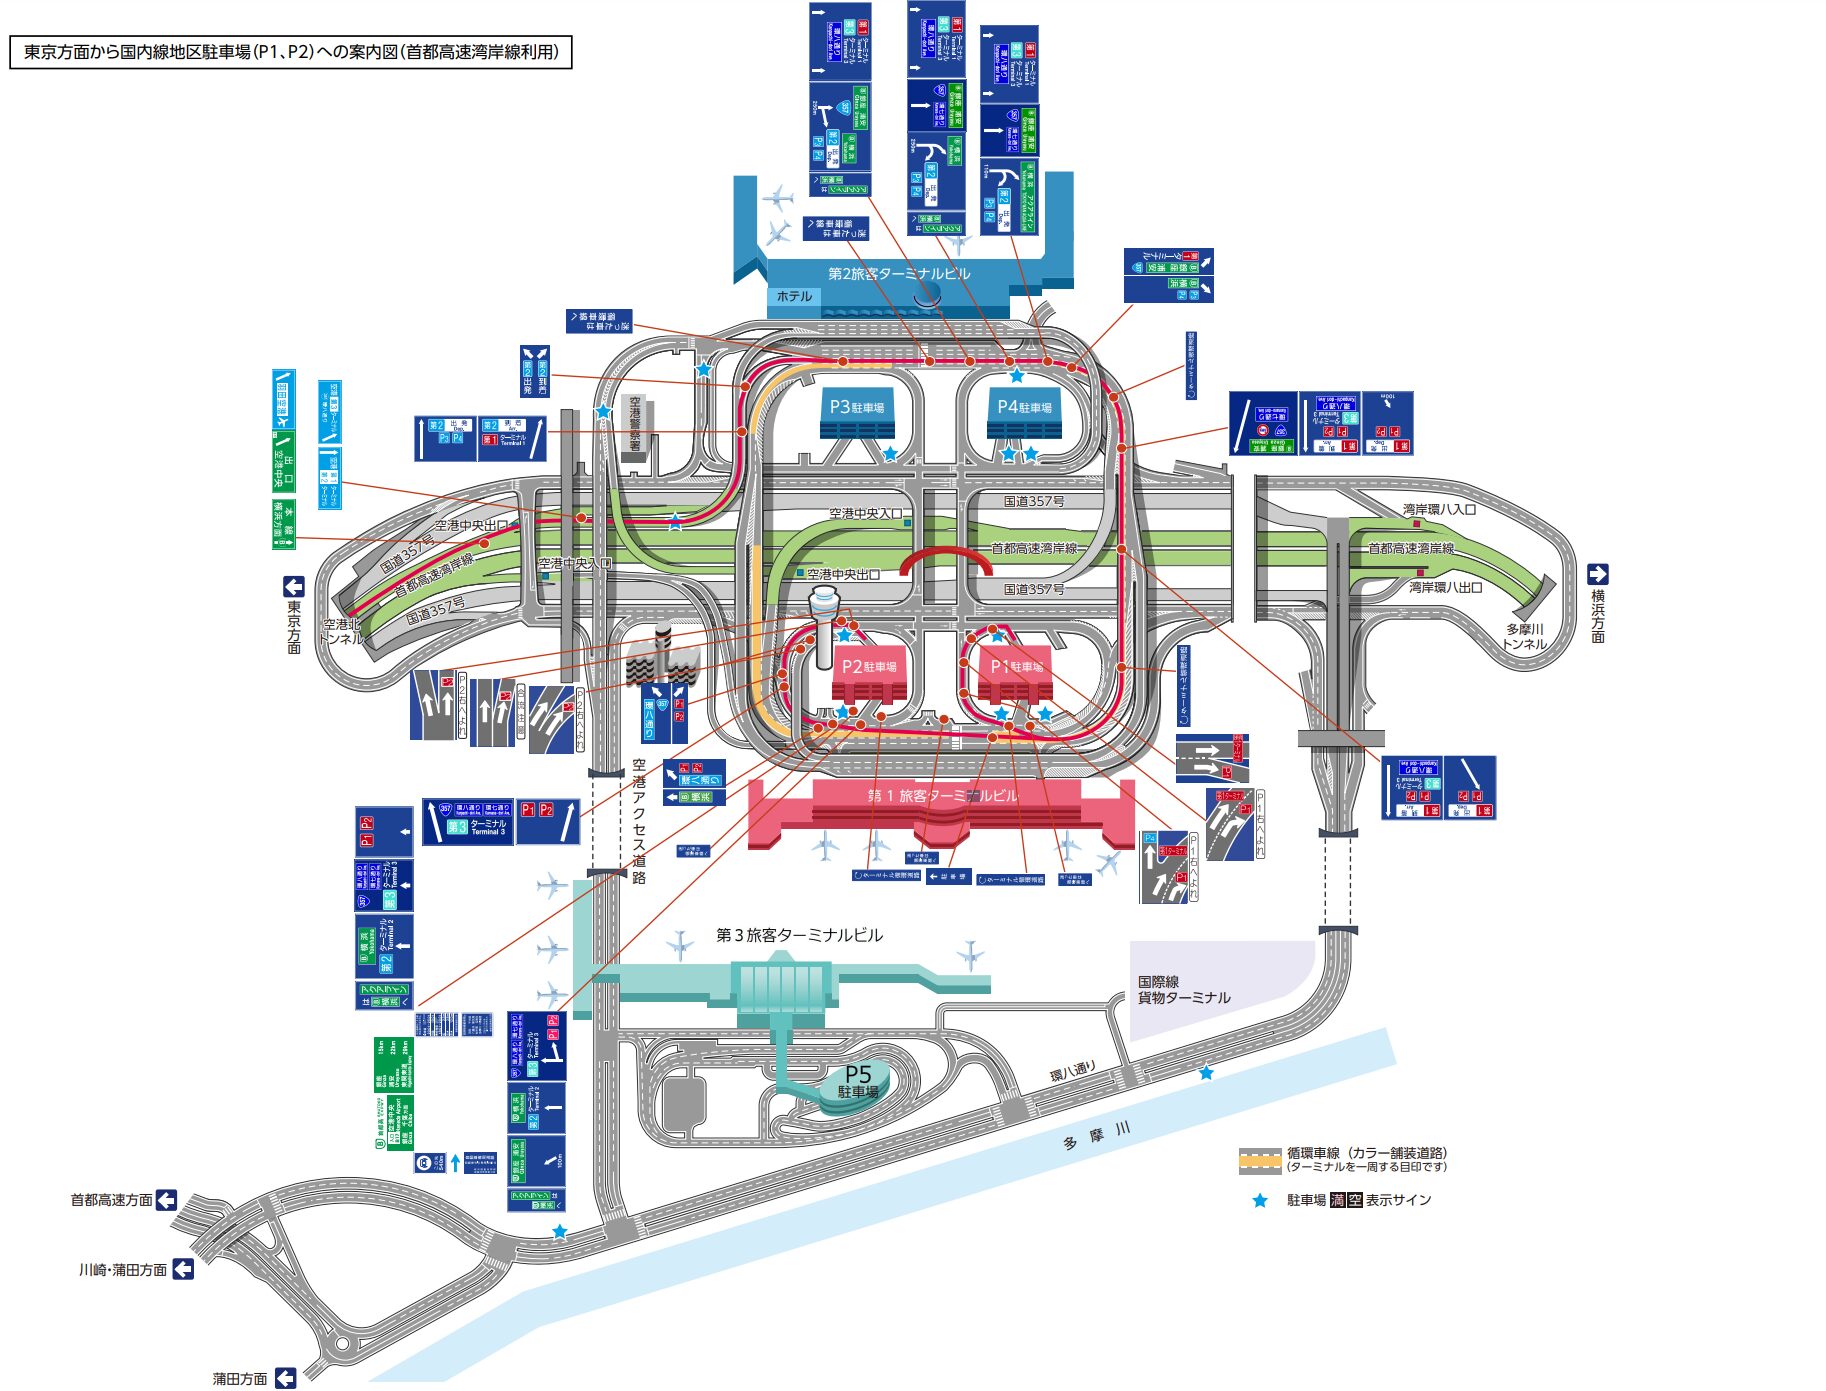 羽田空港駐車場へ行く方法